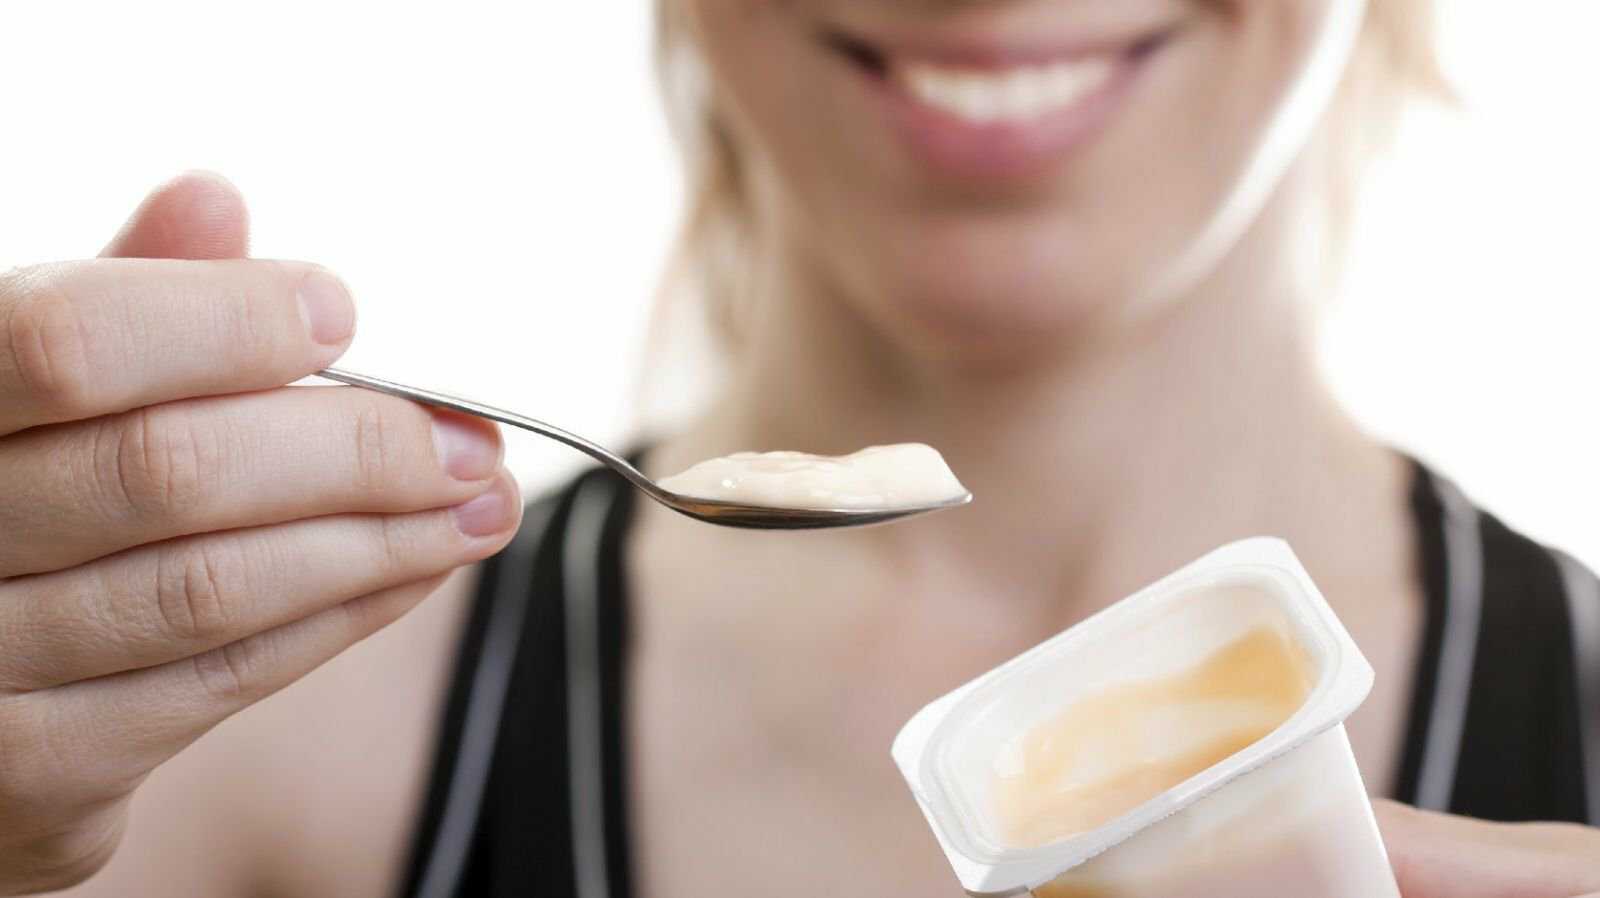 Ăn sữa chua có béo không là thắc mắc của rất nhiều người, nhất là những ai đang trong quá trình giảm cân